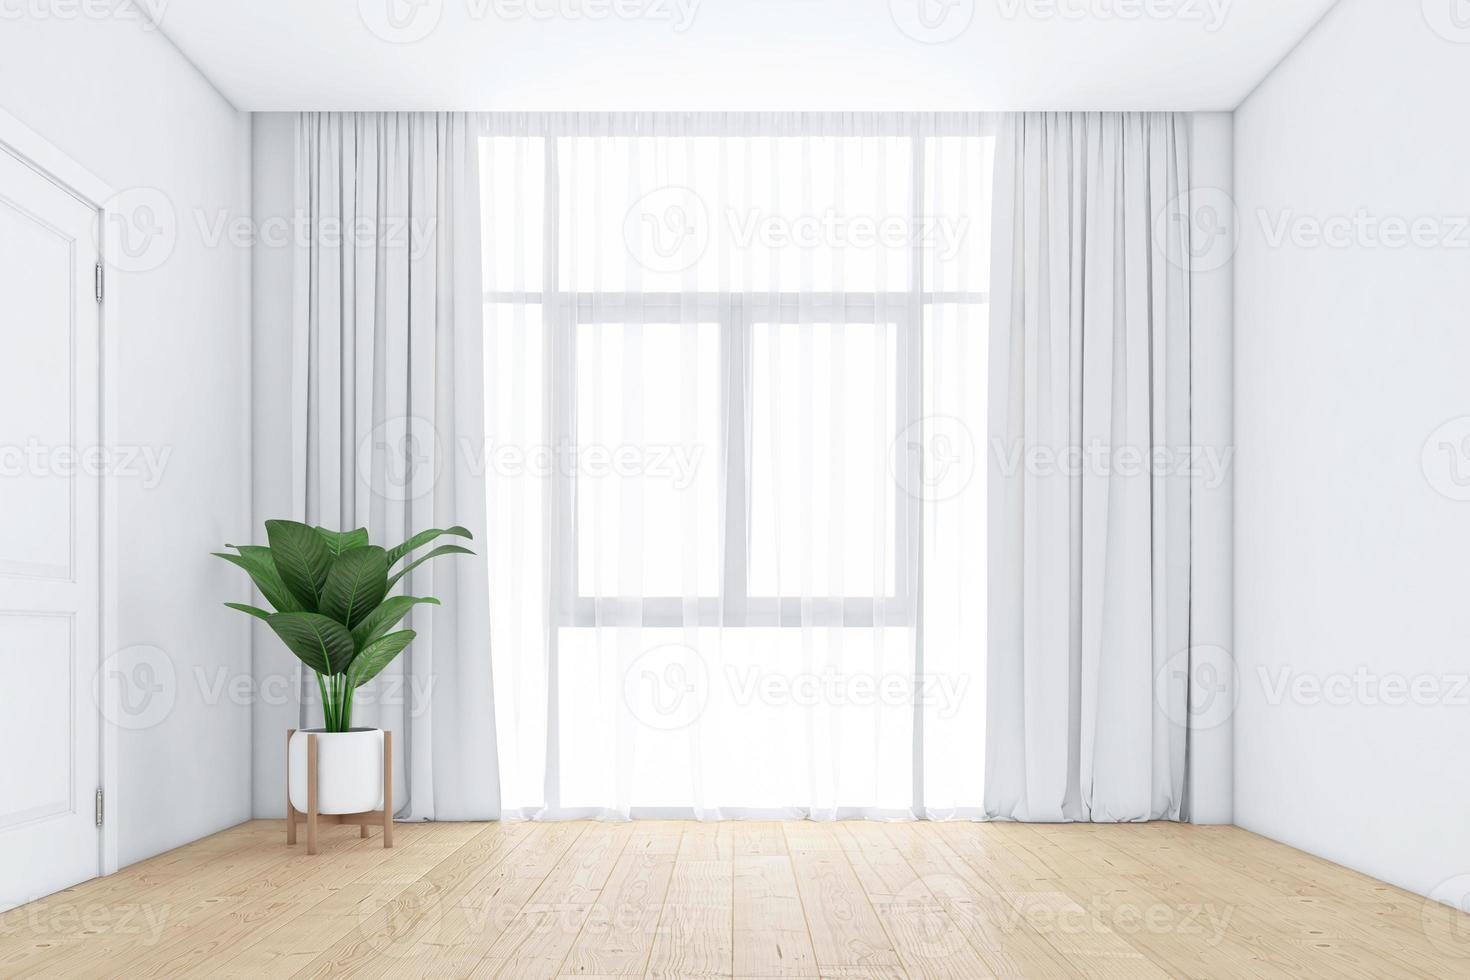 stanza vuota con finestre e tende bianche, pavimento in legno. rendering 3D foto